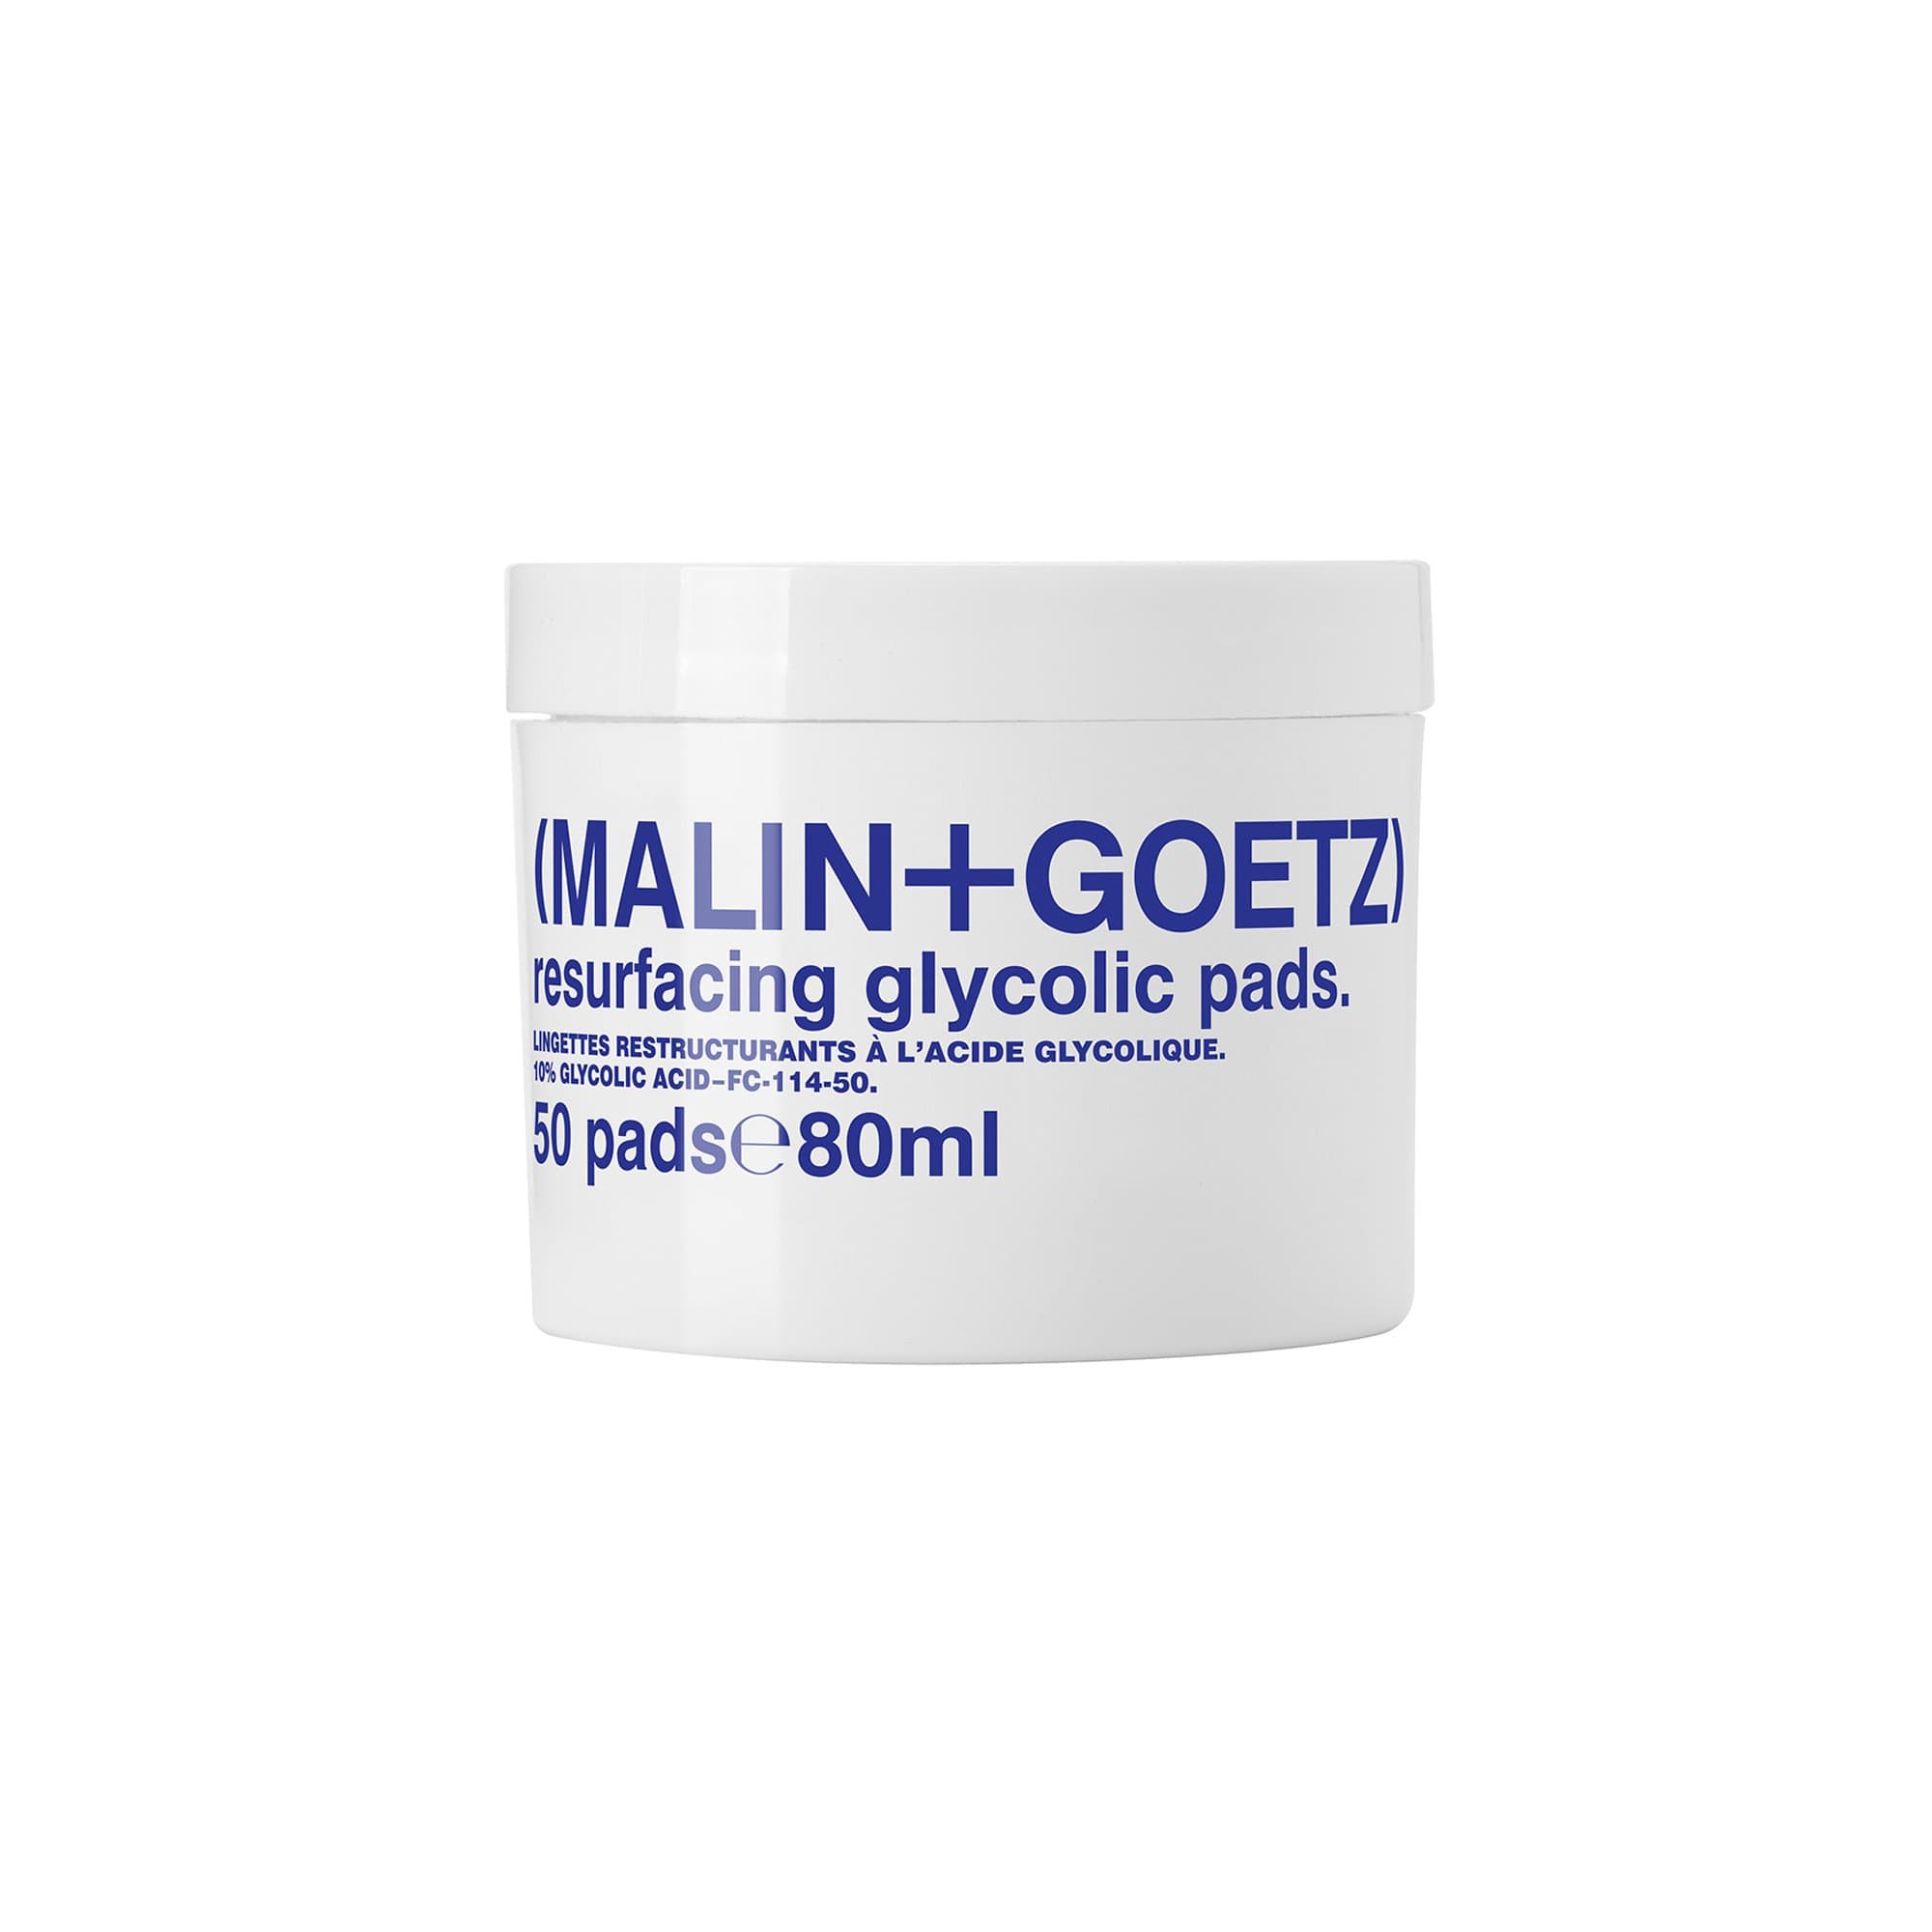 Resurfacing Glycolic Pads (MALIN+GOETZ) Cotton Glycolic Acid Cotton Pads